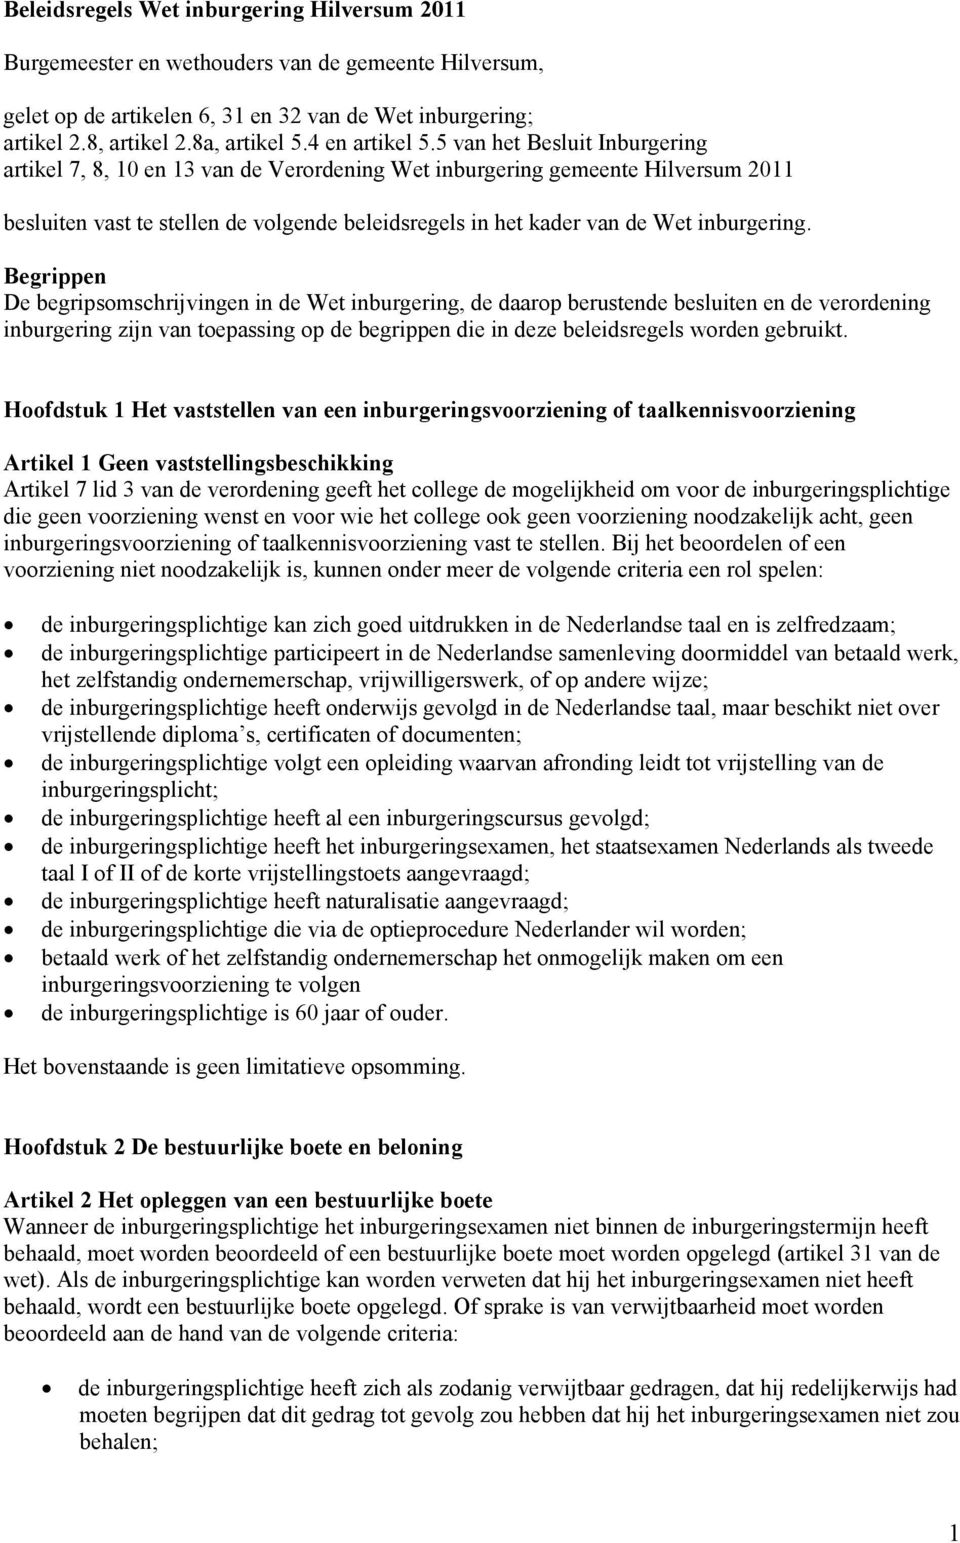 5 van het Besluit Inburgering artikel 7, 8, 10 en 13 van de Verordening Wet inburgering gemeente Hilversum 2011 besluiten vast te stellen de volgende beleidsregels in het kader van de Wet inburgering.